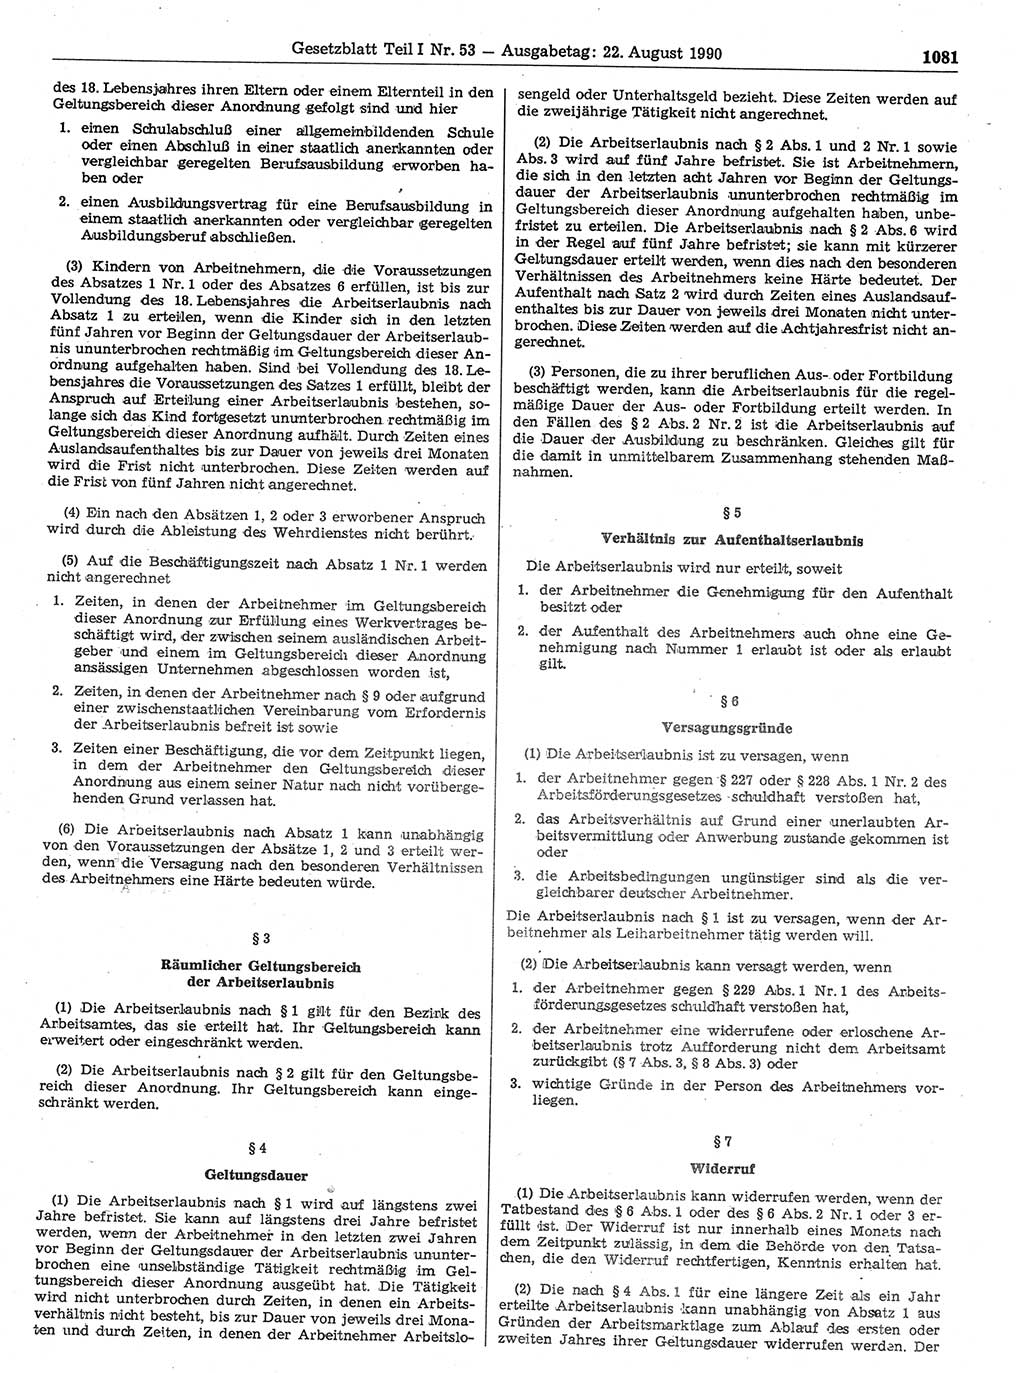 Gesetzblatt (GBl.) der Deutschen Demokratischen Republik (DDR) Teil Ⅰ 1990, Seite 1081 (GBl. DDR Ⅰ 1990, S. 1081)